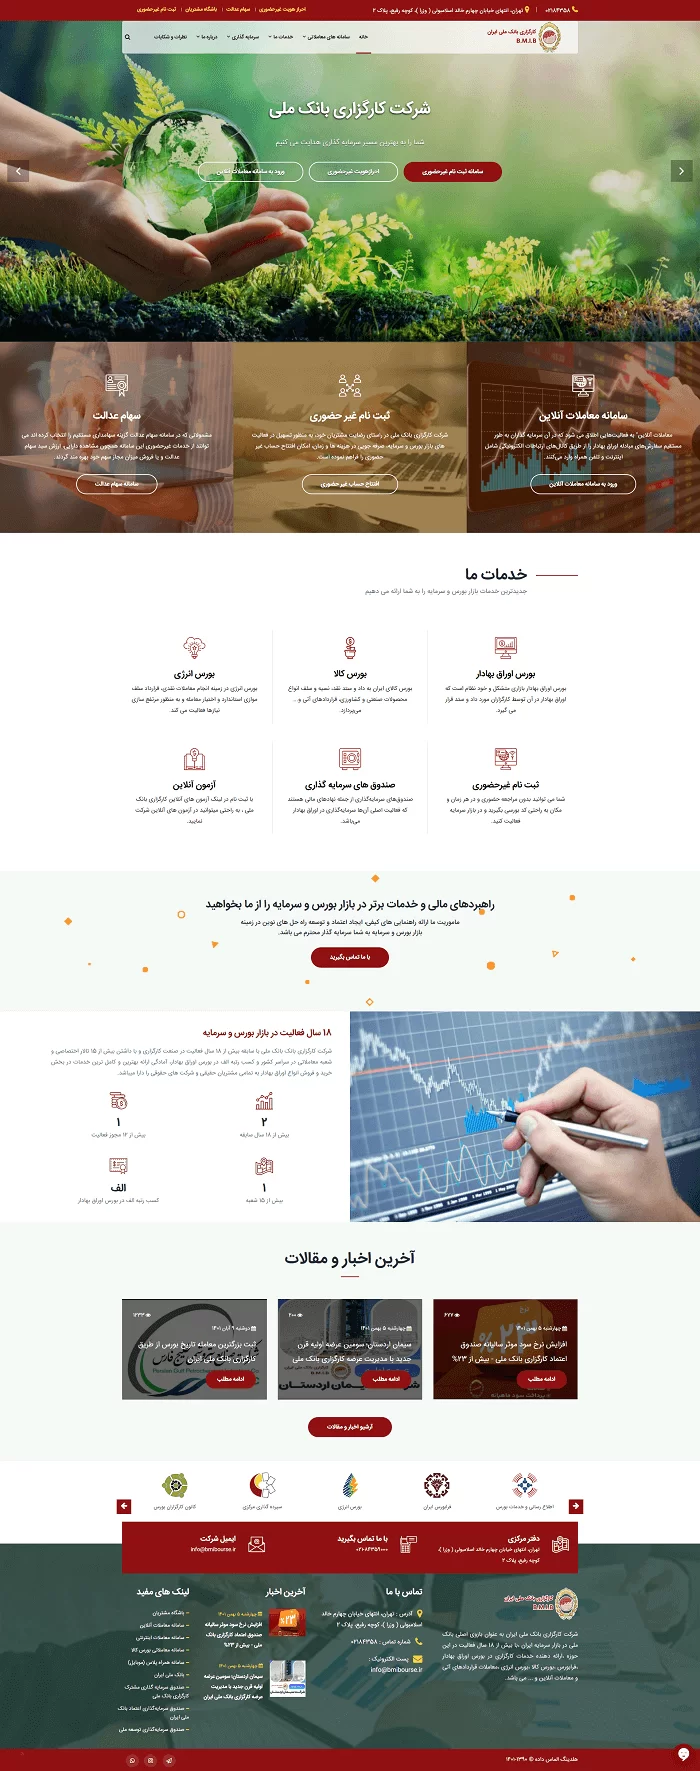 طراحی سایت طراحی سایت کارگزاری بانک ملی